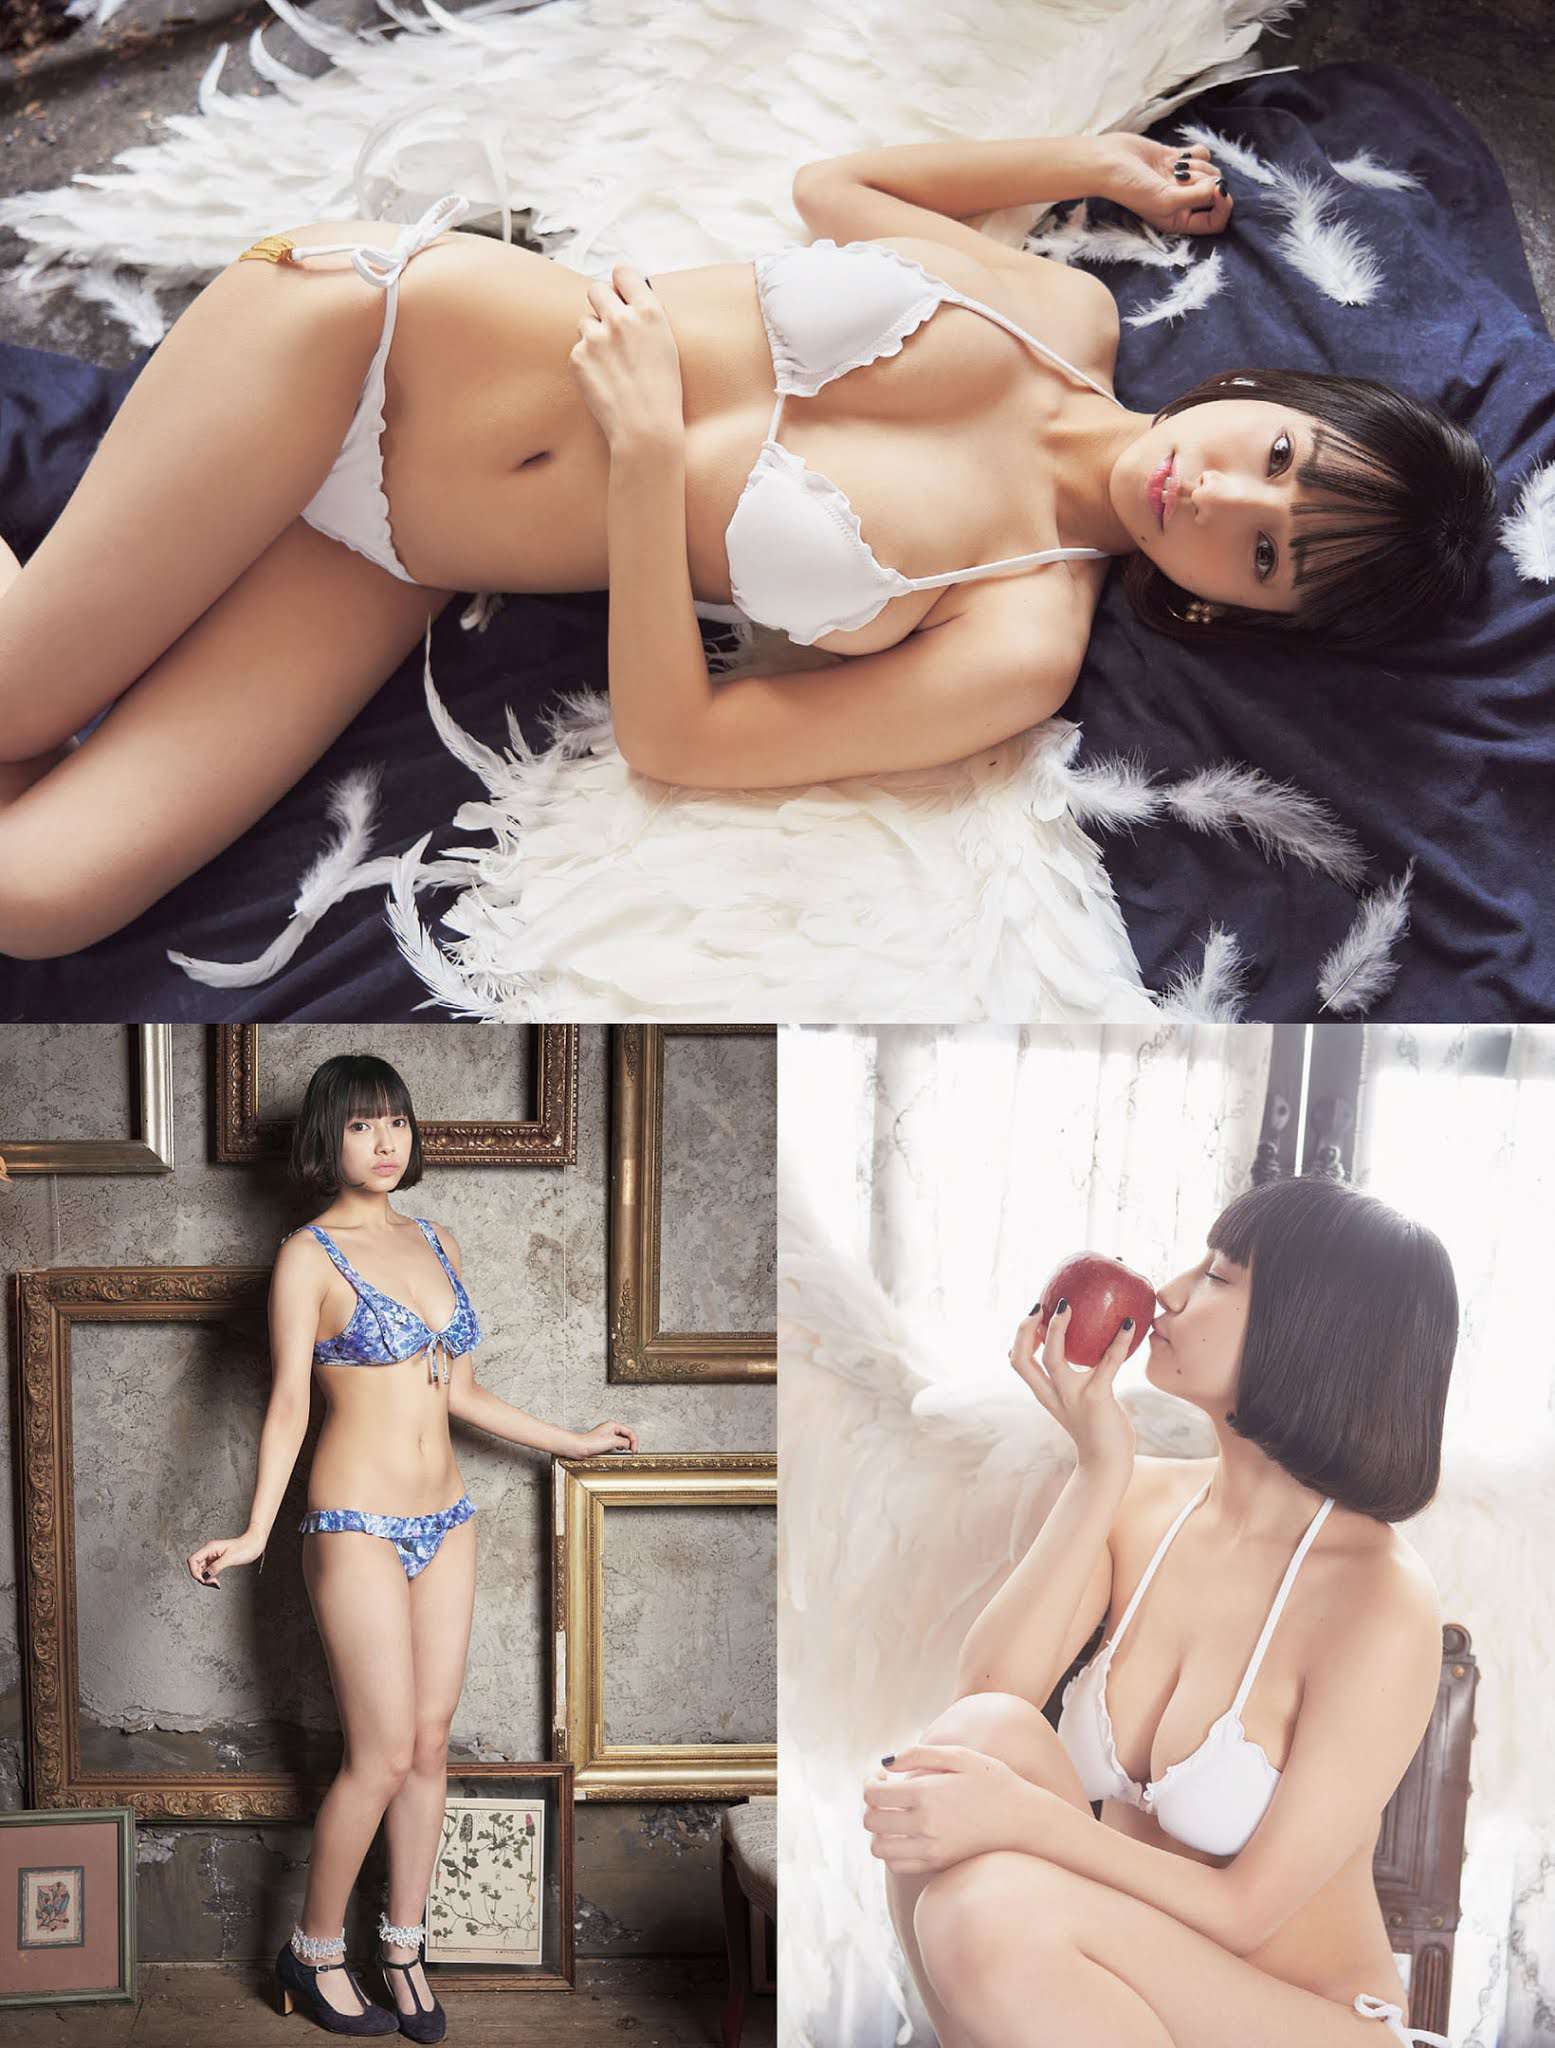 日本少女偶像《天使もも》写真「死库水」-第12张图片